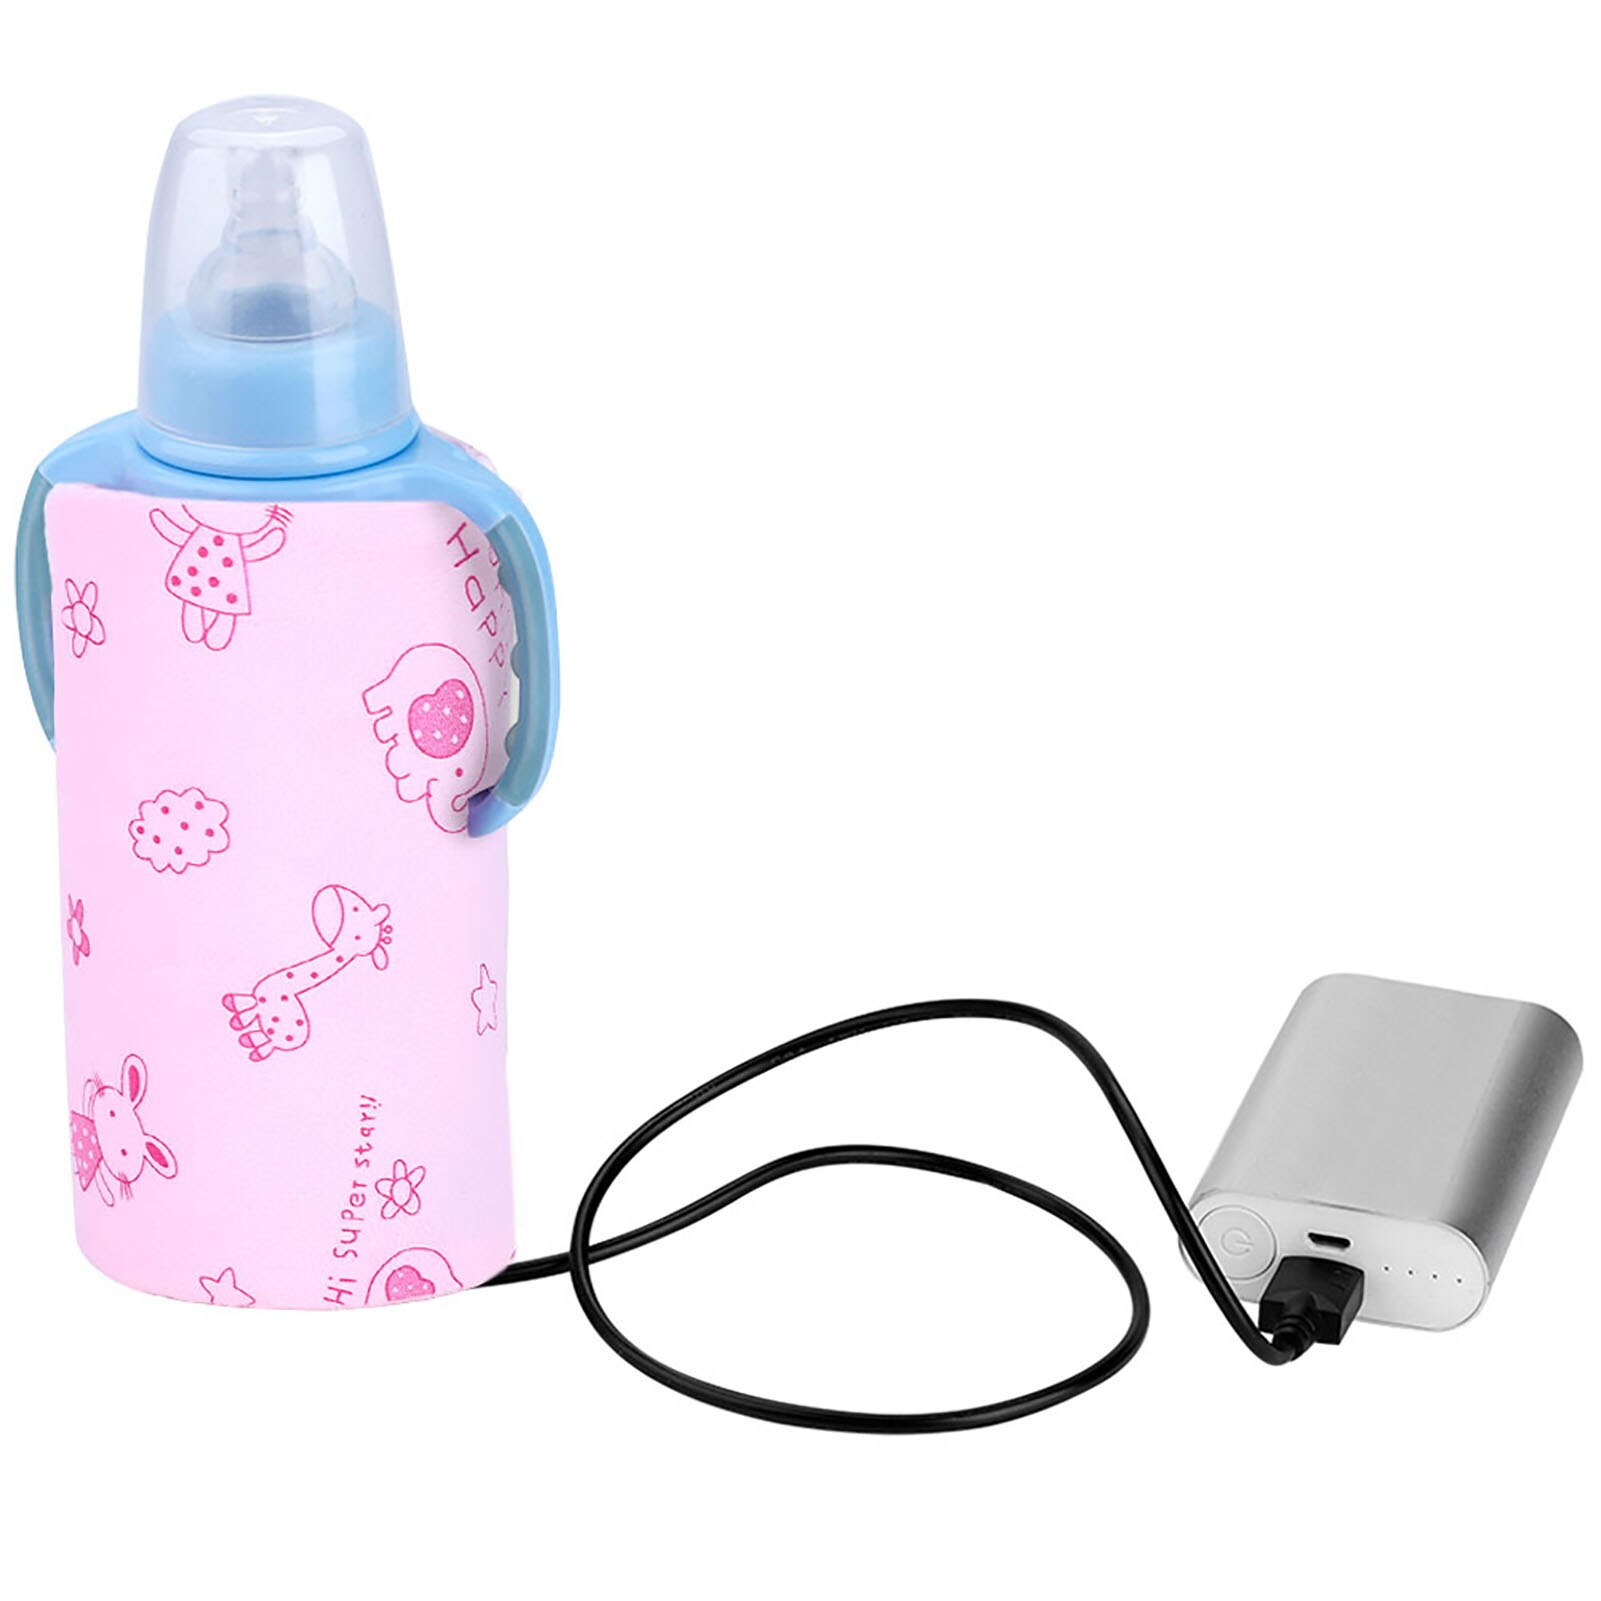 Usb baby mælk varmere bærbar rejse flaske varmere spædbarn fodring flaske taske isolering dække baby pleje flaske varmelegeme: Lyserød